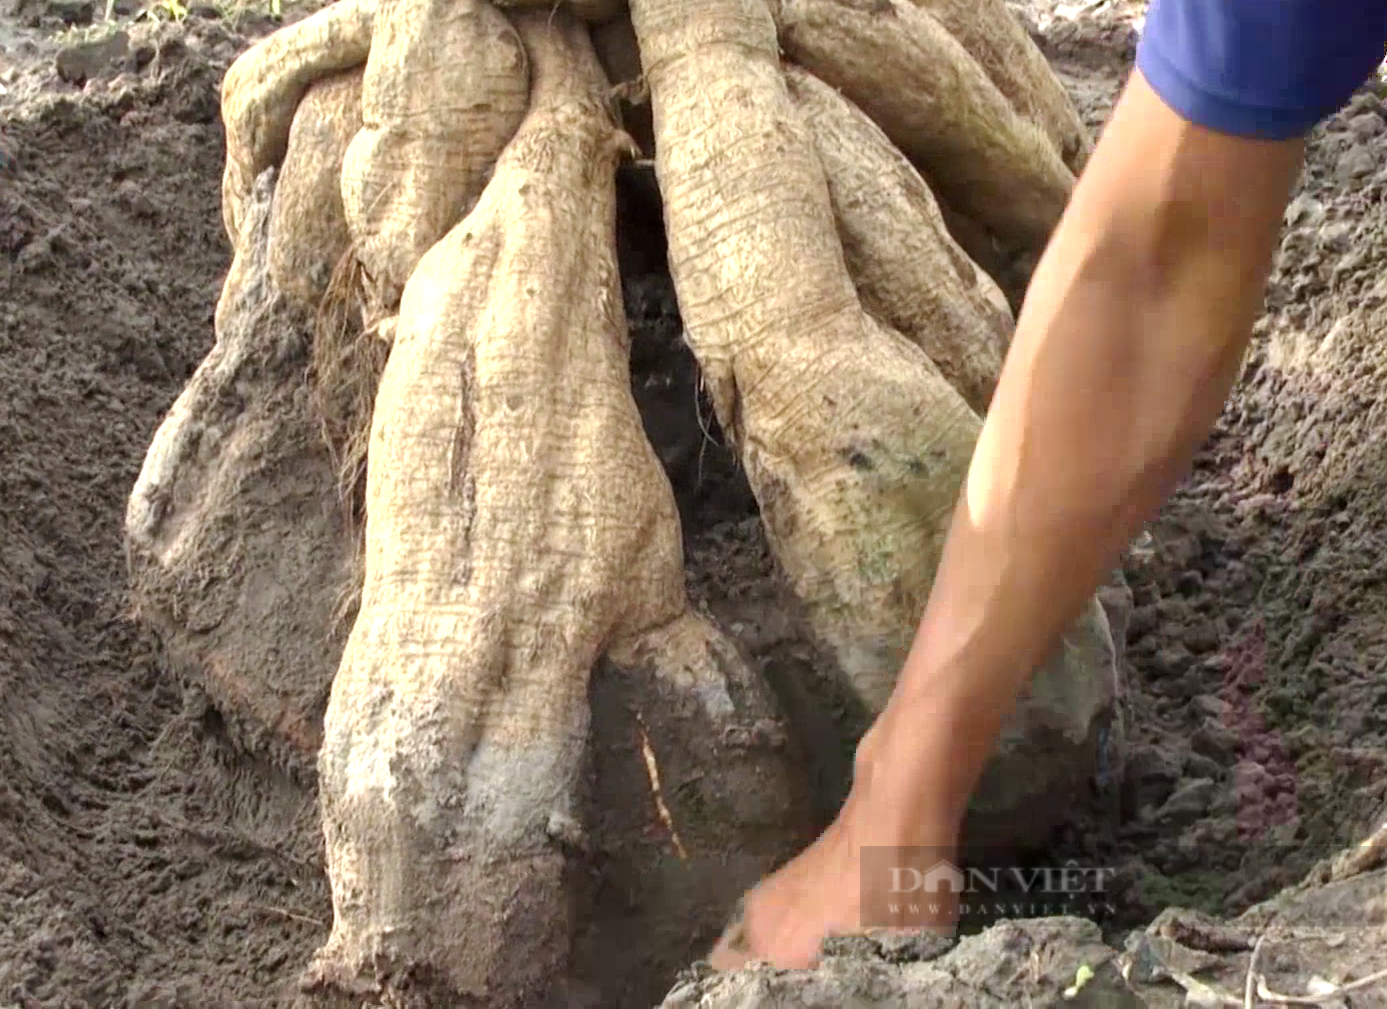 Anh nông dân Tây Ninh trồng loại củ khổng lồ vừa ăn vừa làm thuốc, đào lên không đủ bán - Ảnh 1.